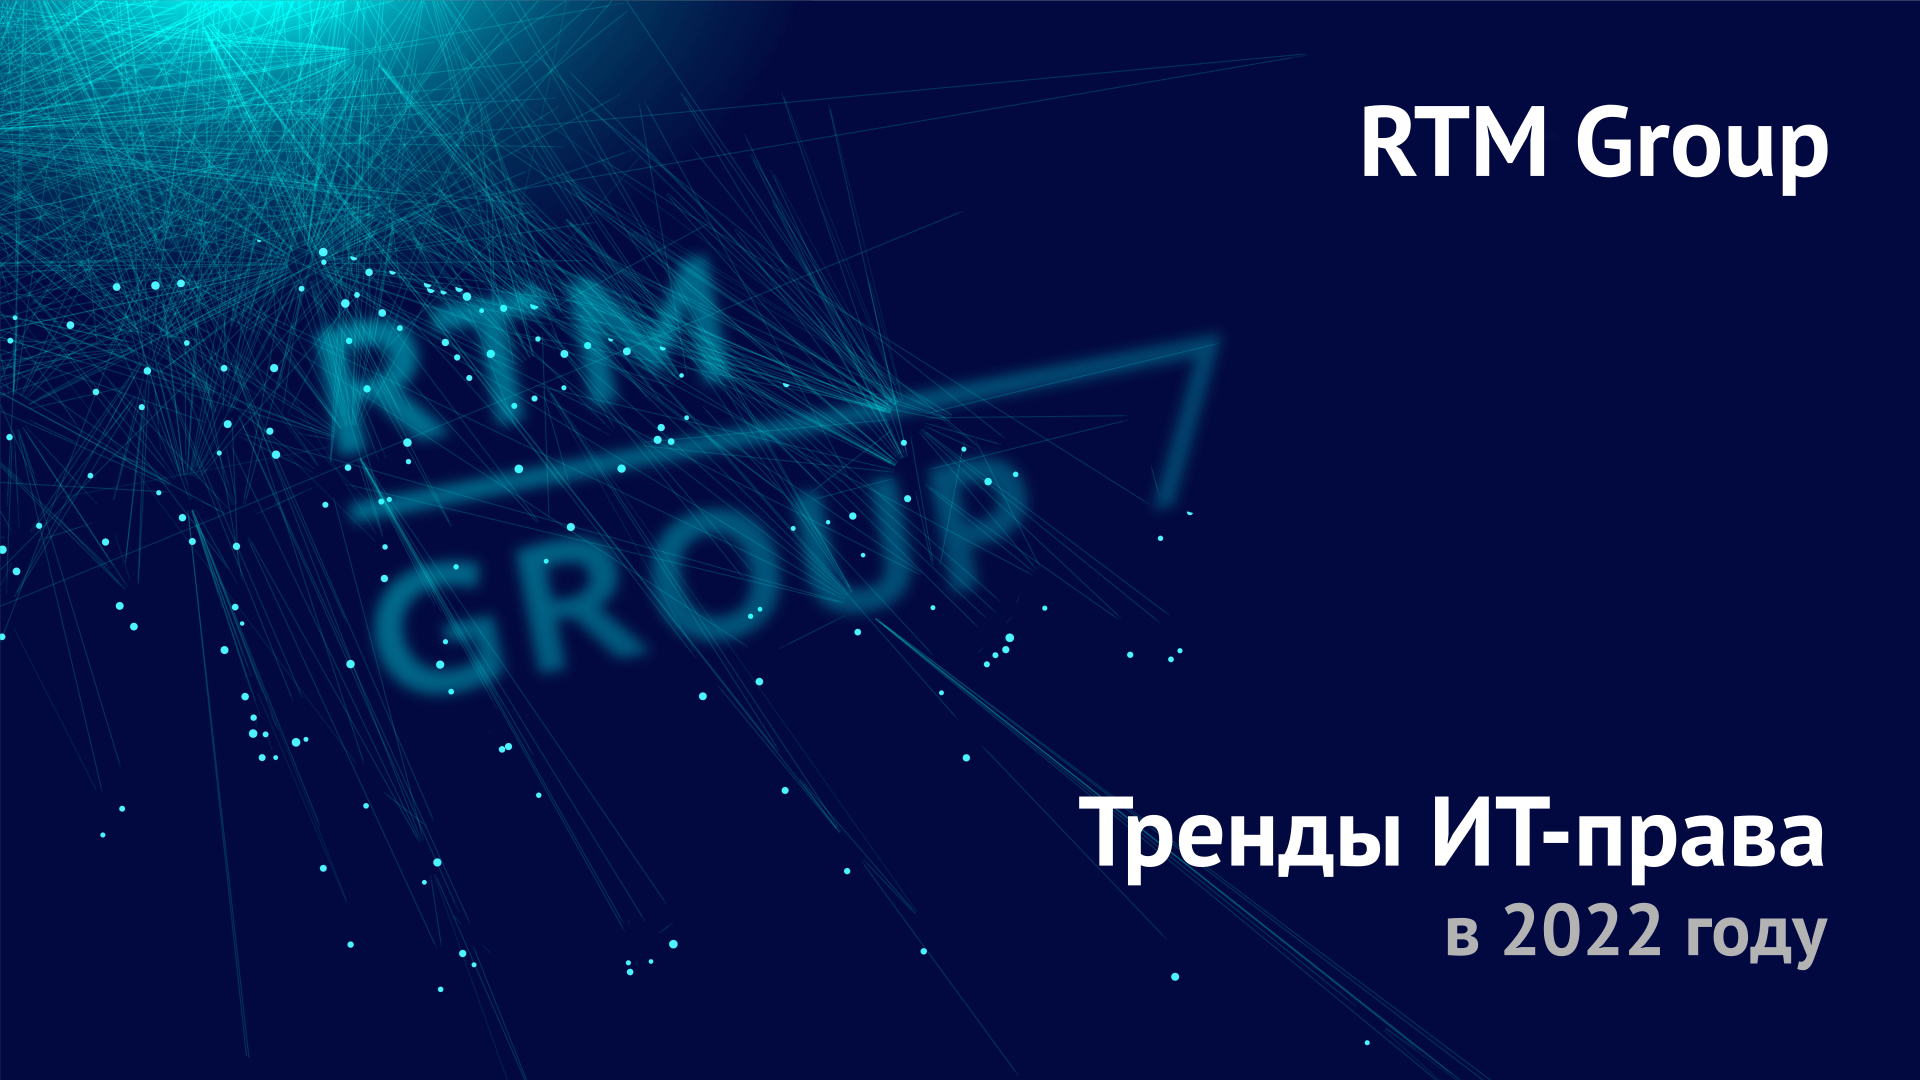 RTM Group представляет тренды в области ИТ-права 2022